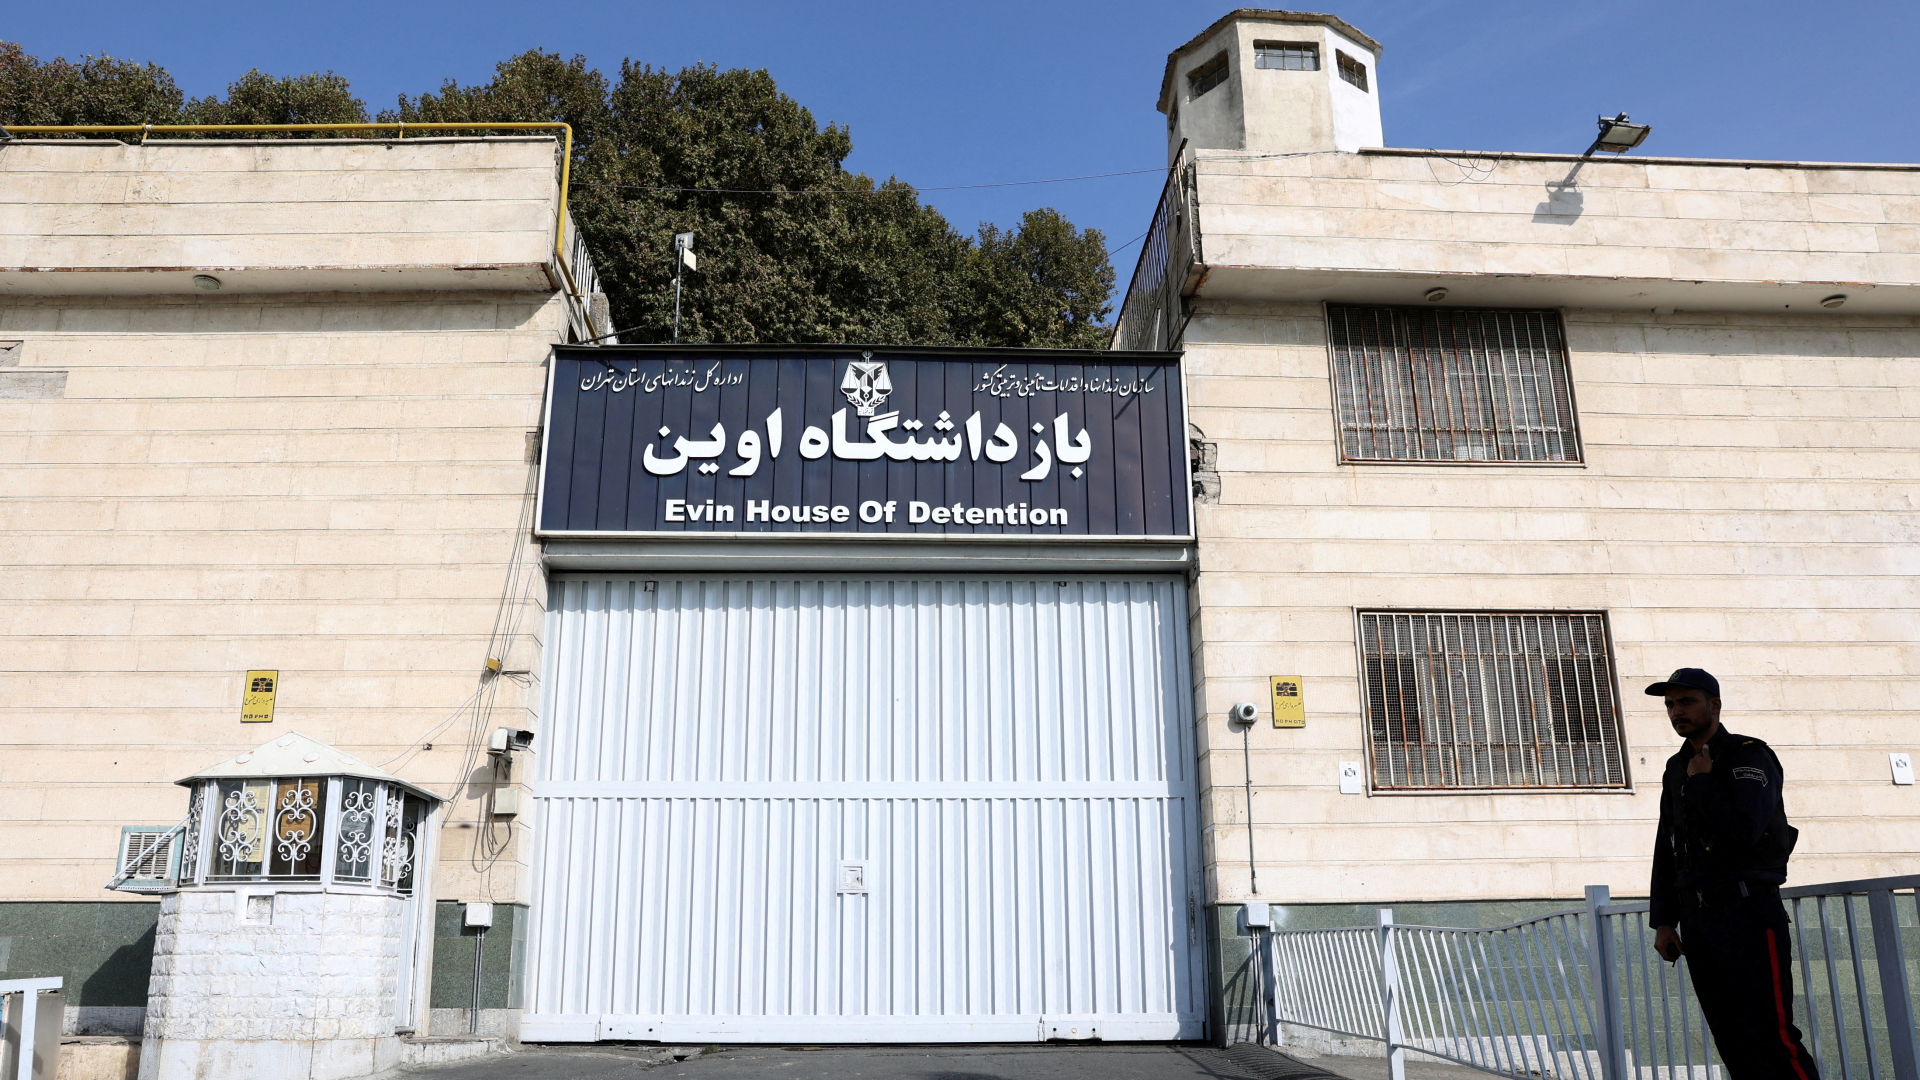 Angeblicher Gefangenenaustausch: USA bestreiten Einigung mit Iran